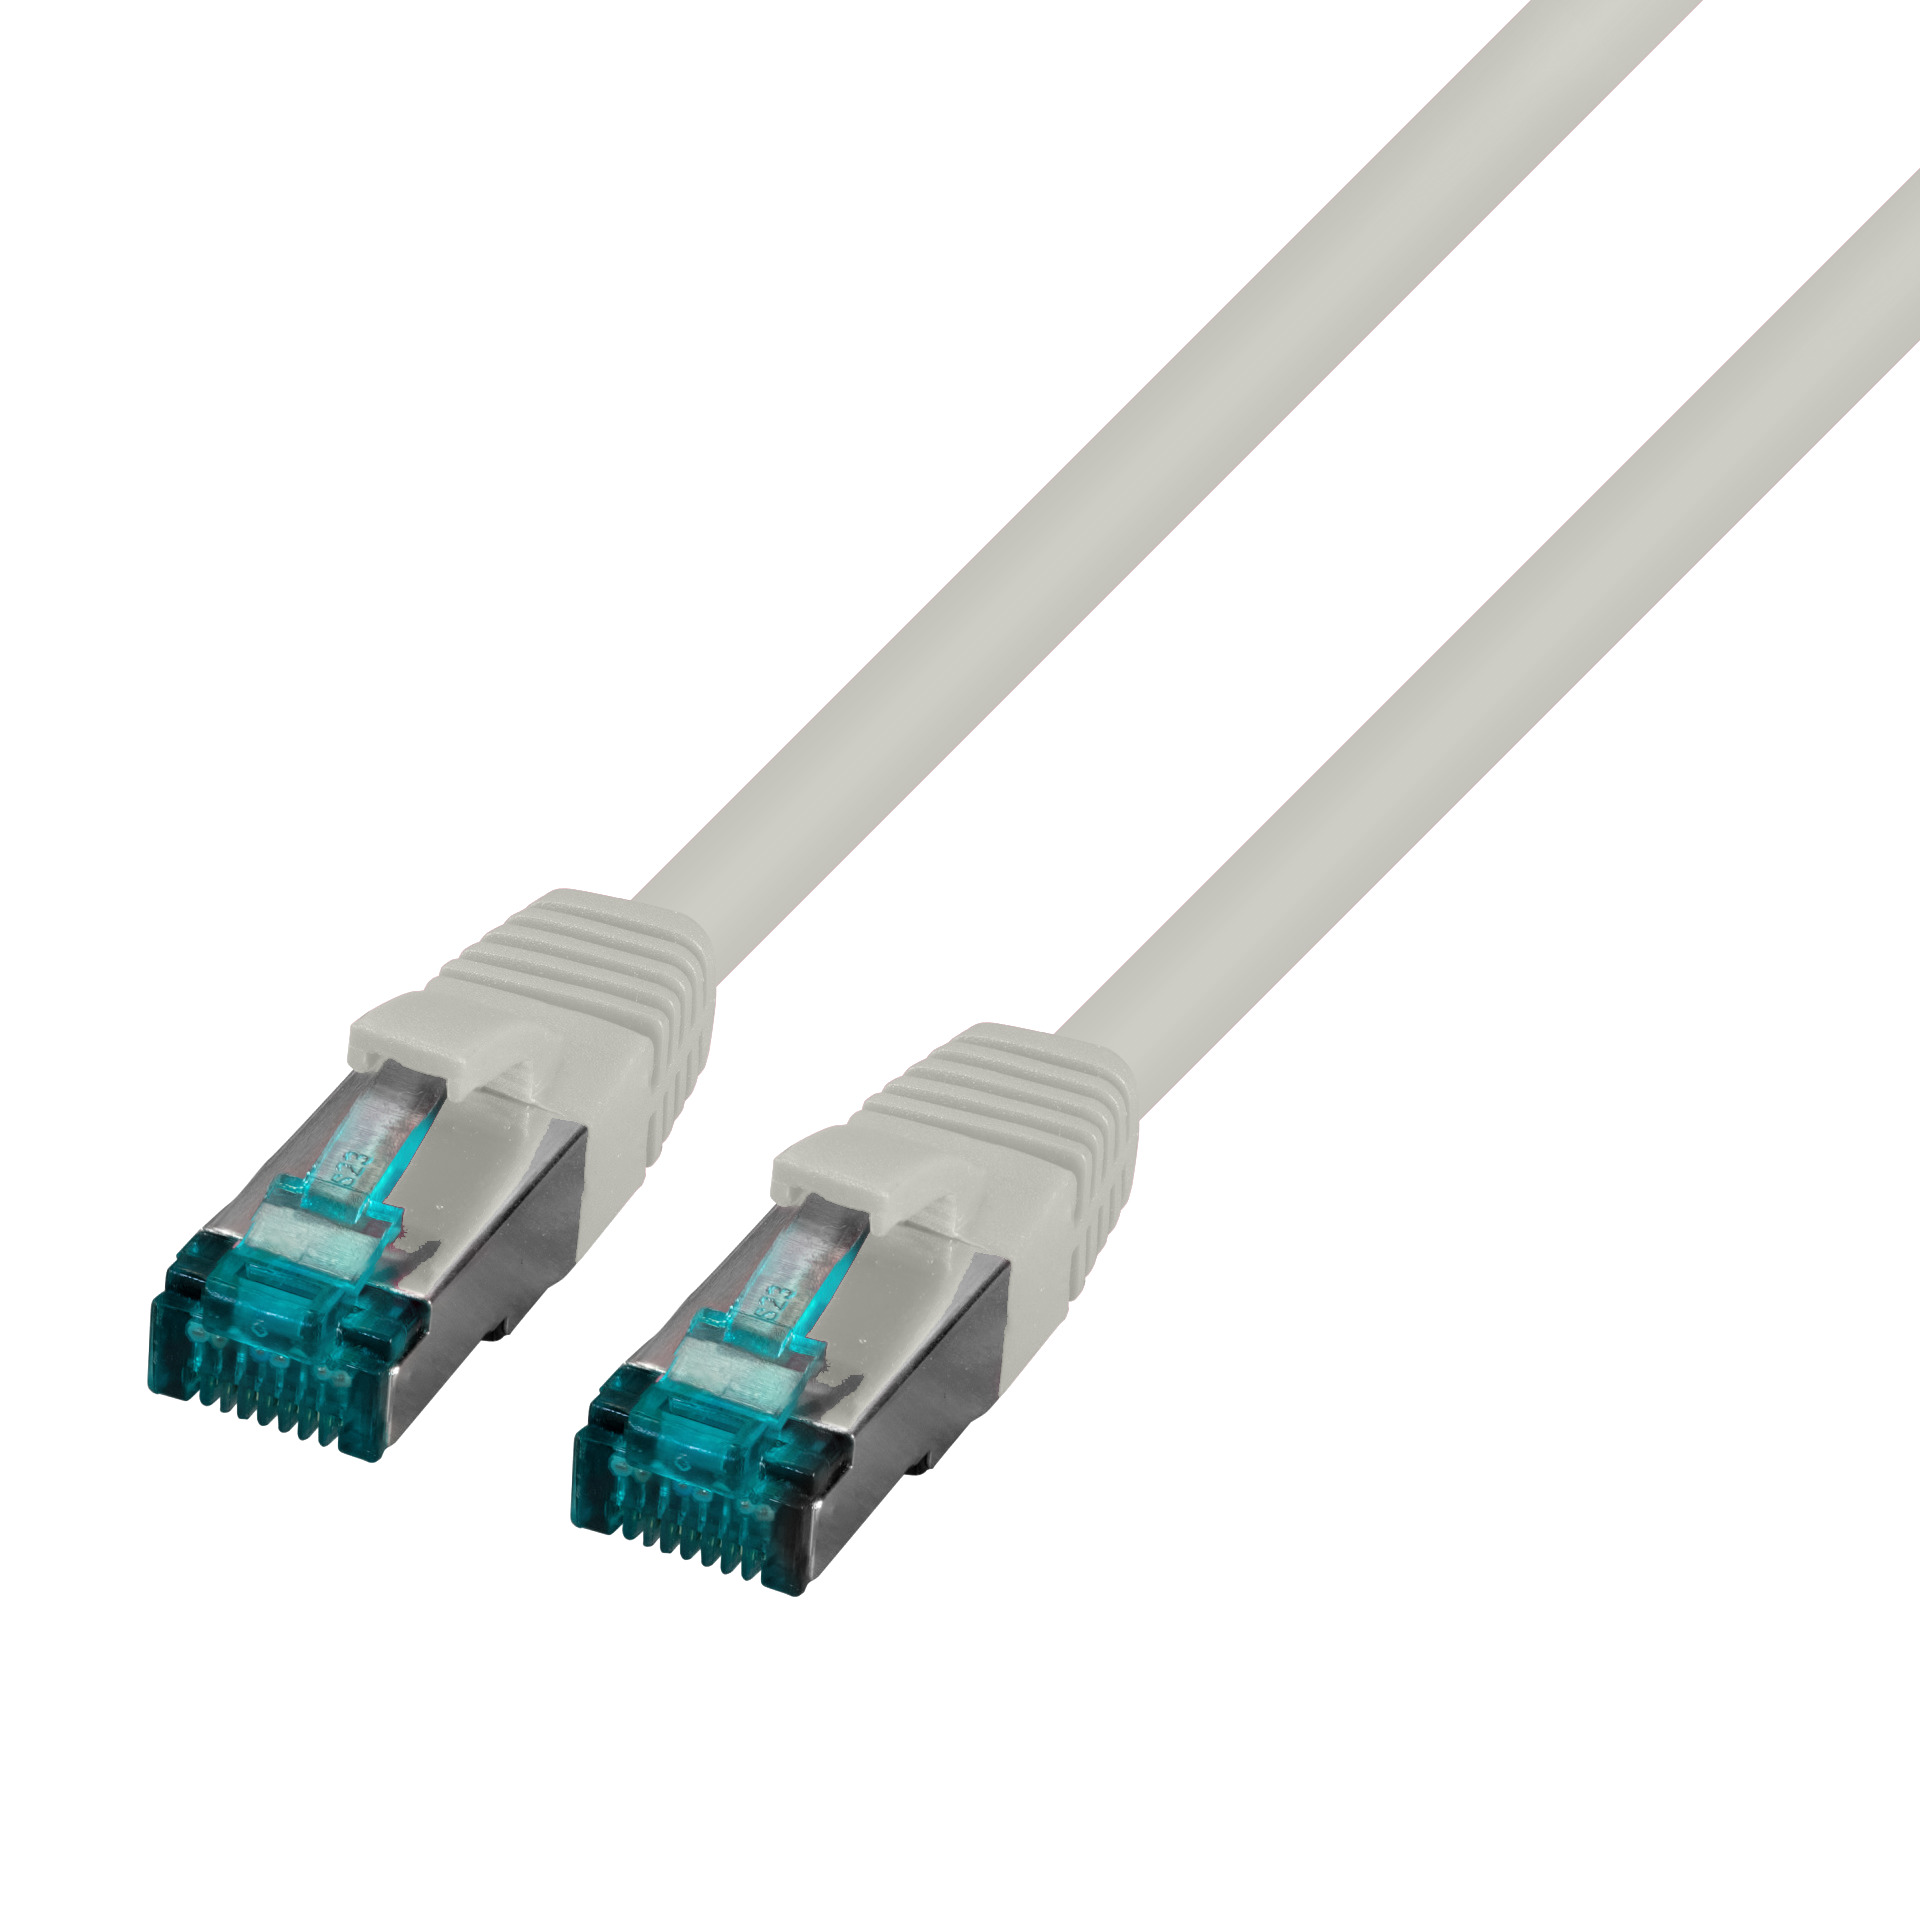 RJ45 Patch cable S/FTP, Cat.6A, LSZH, 0.15m, grey